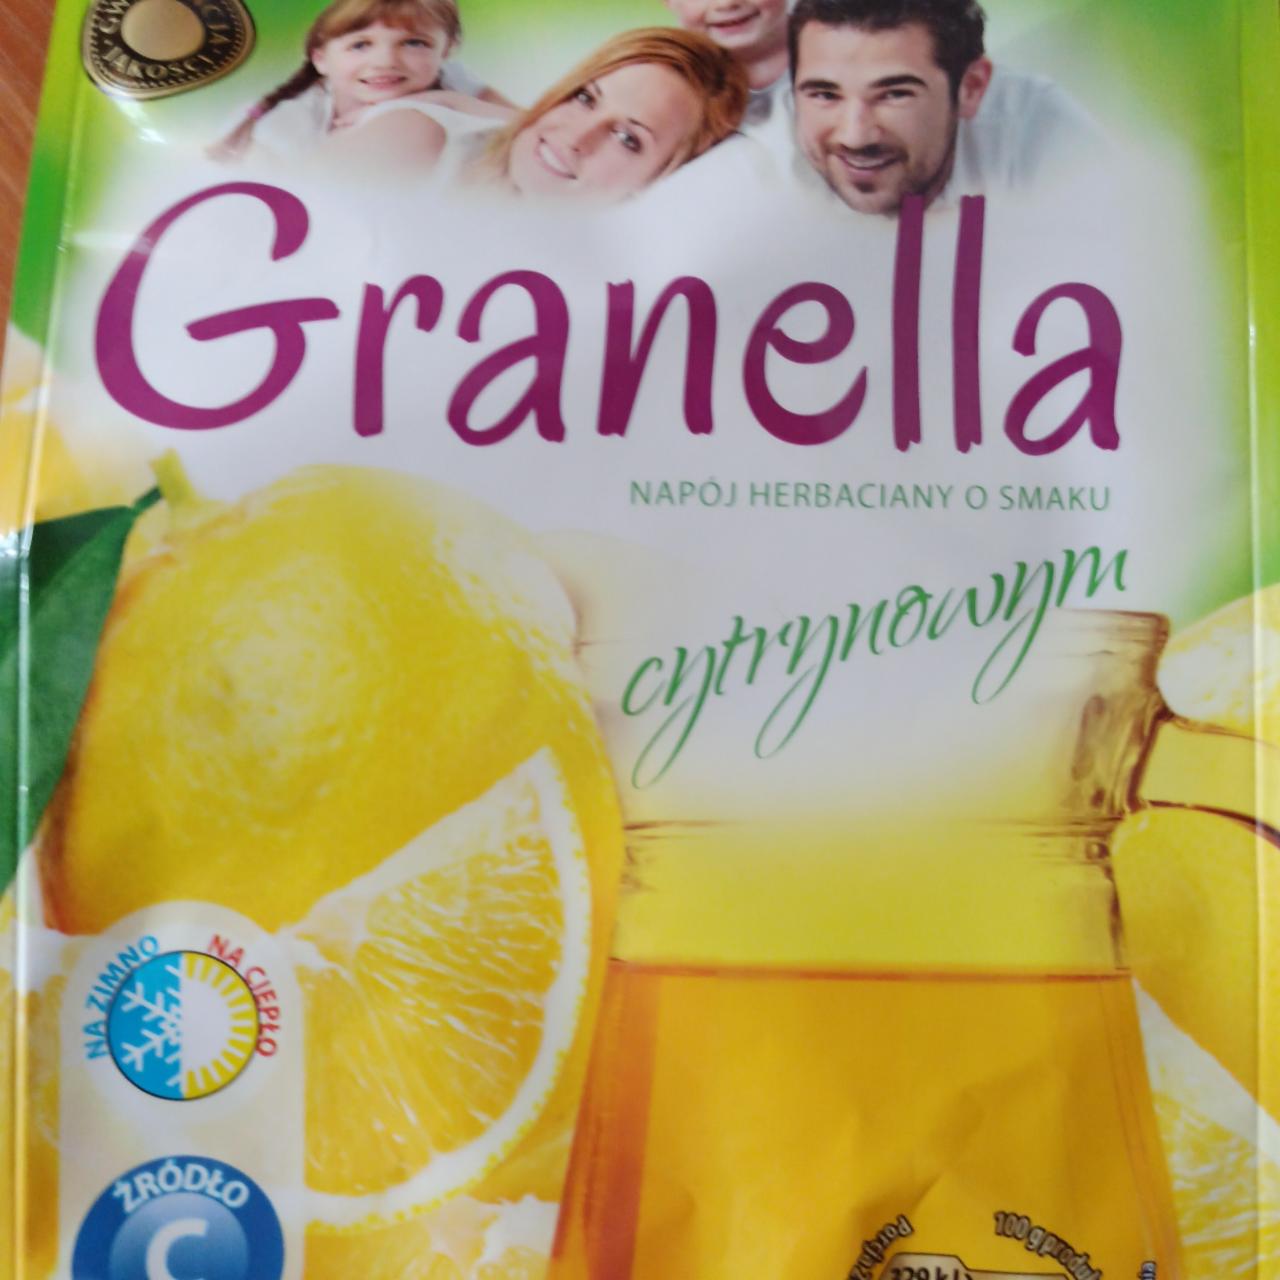 Zdjęcia - Napój herbaciany o smaku cytrynowym Granella